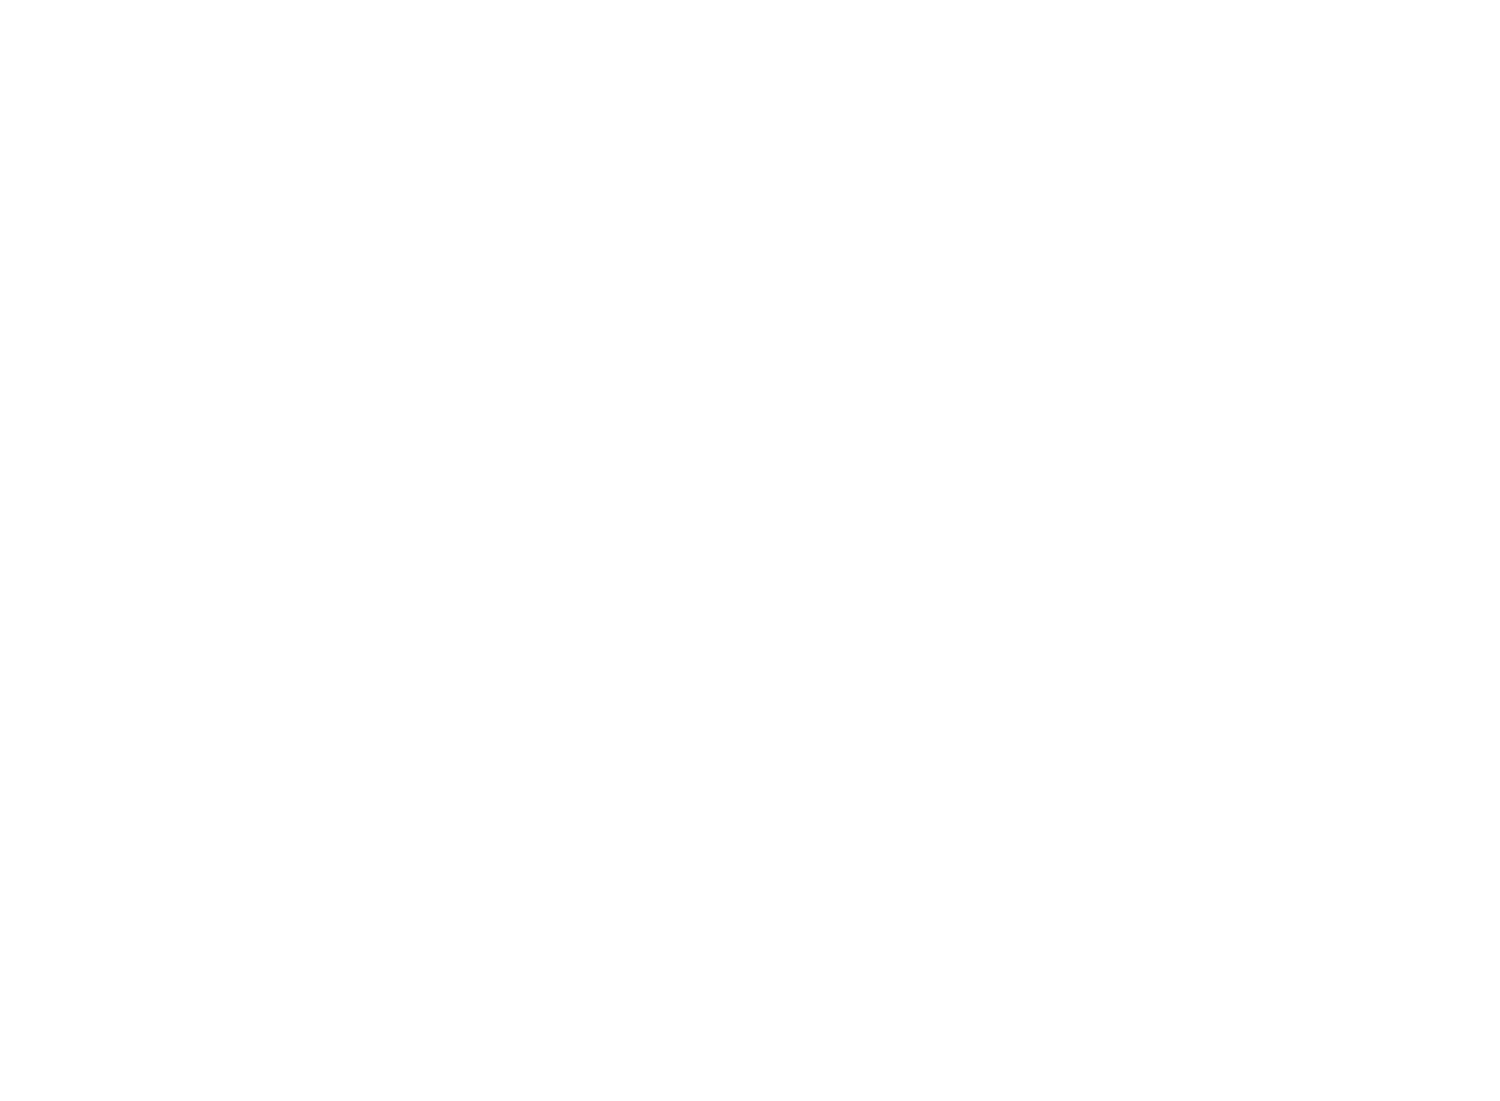 Jacob Hulland